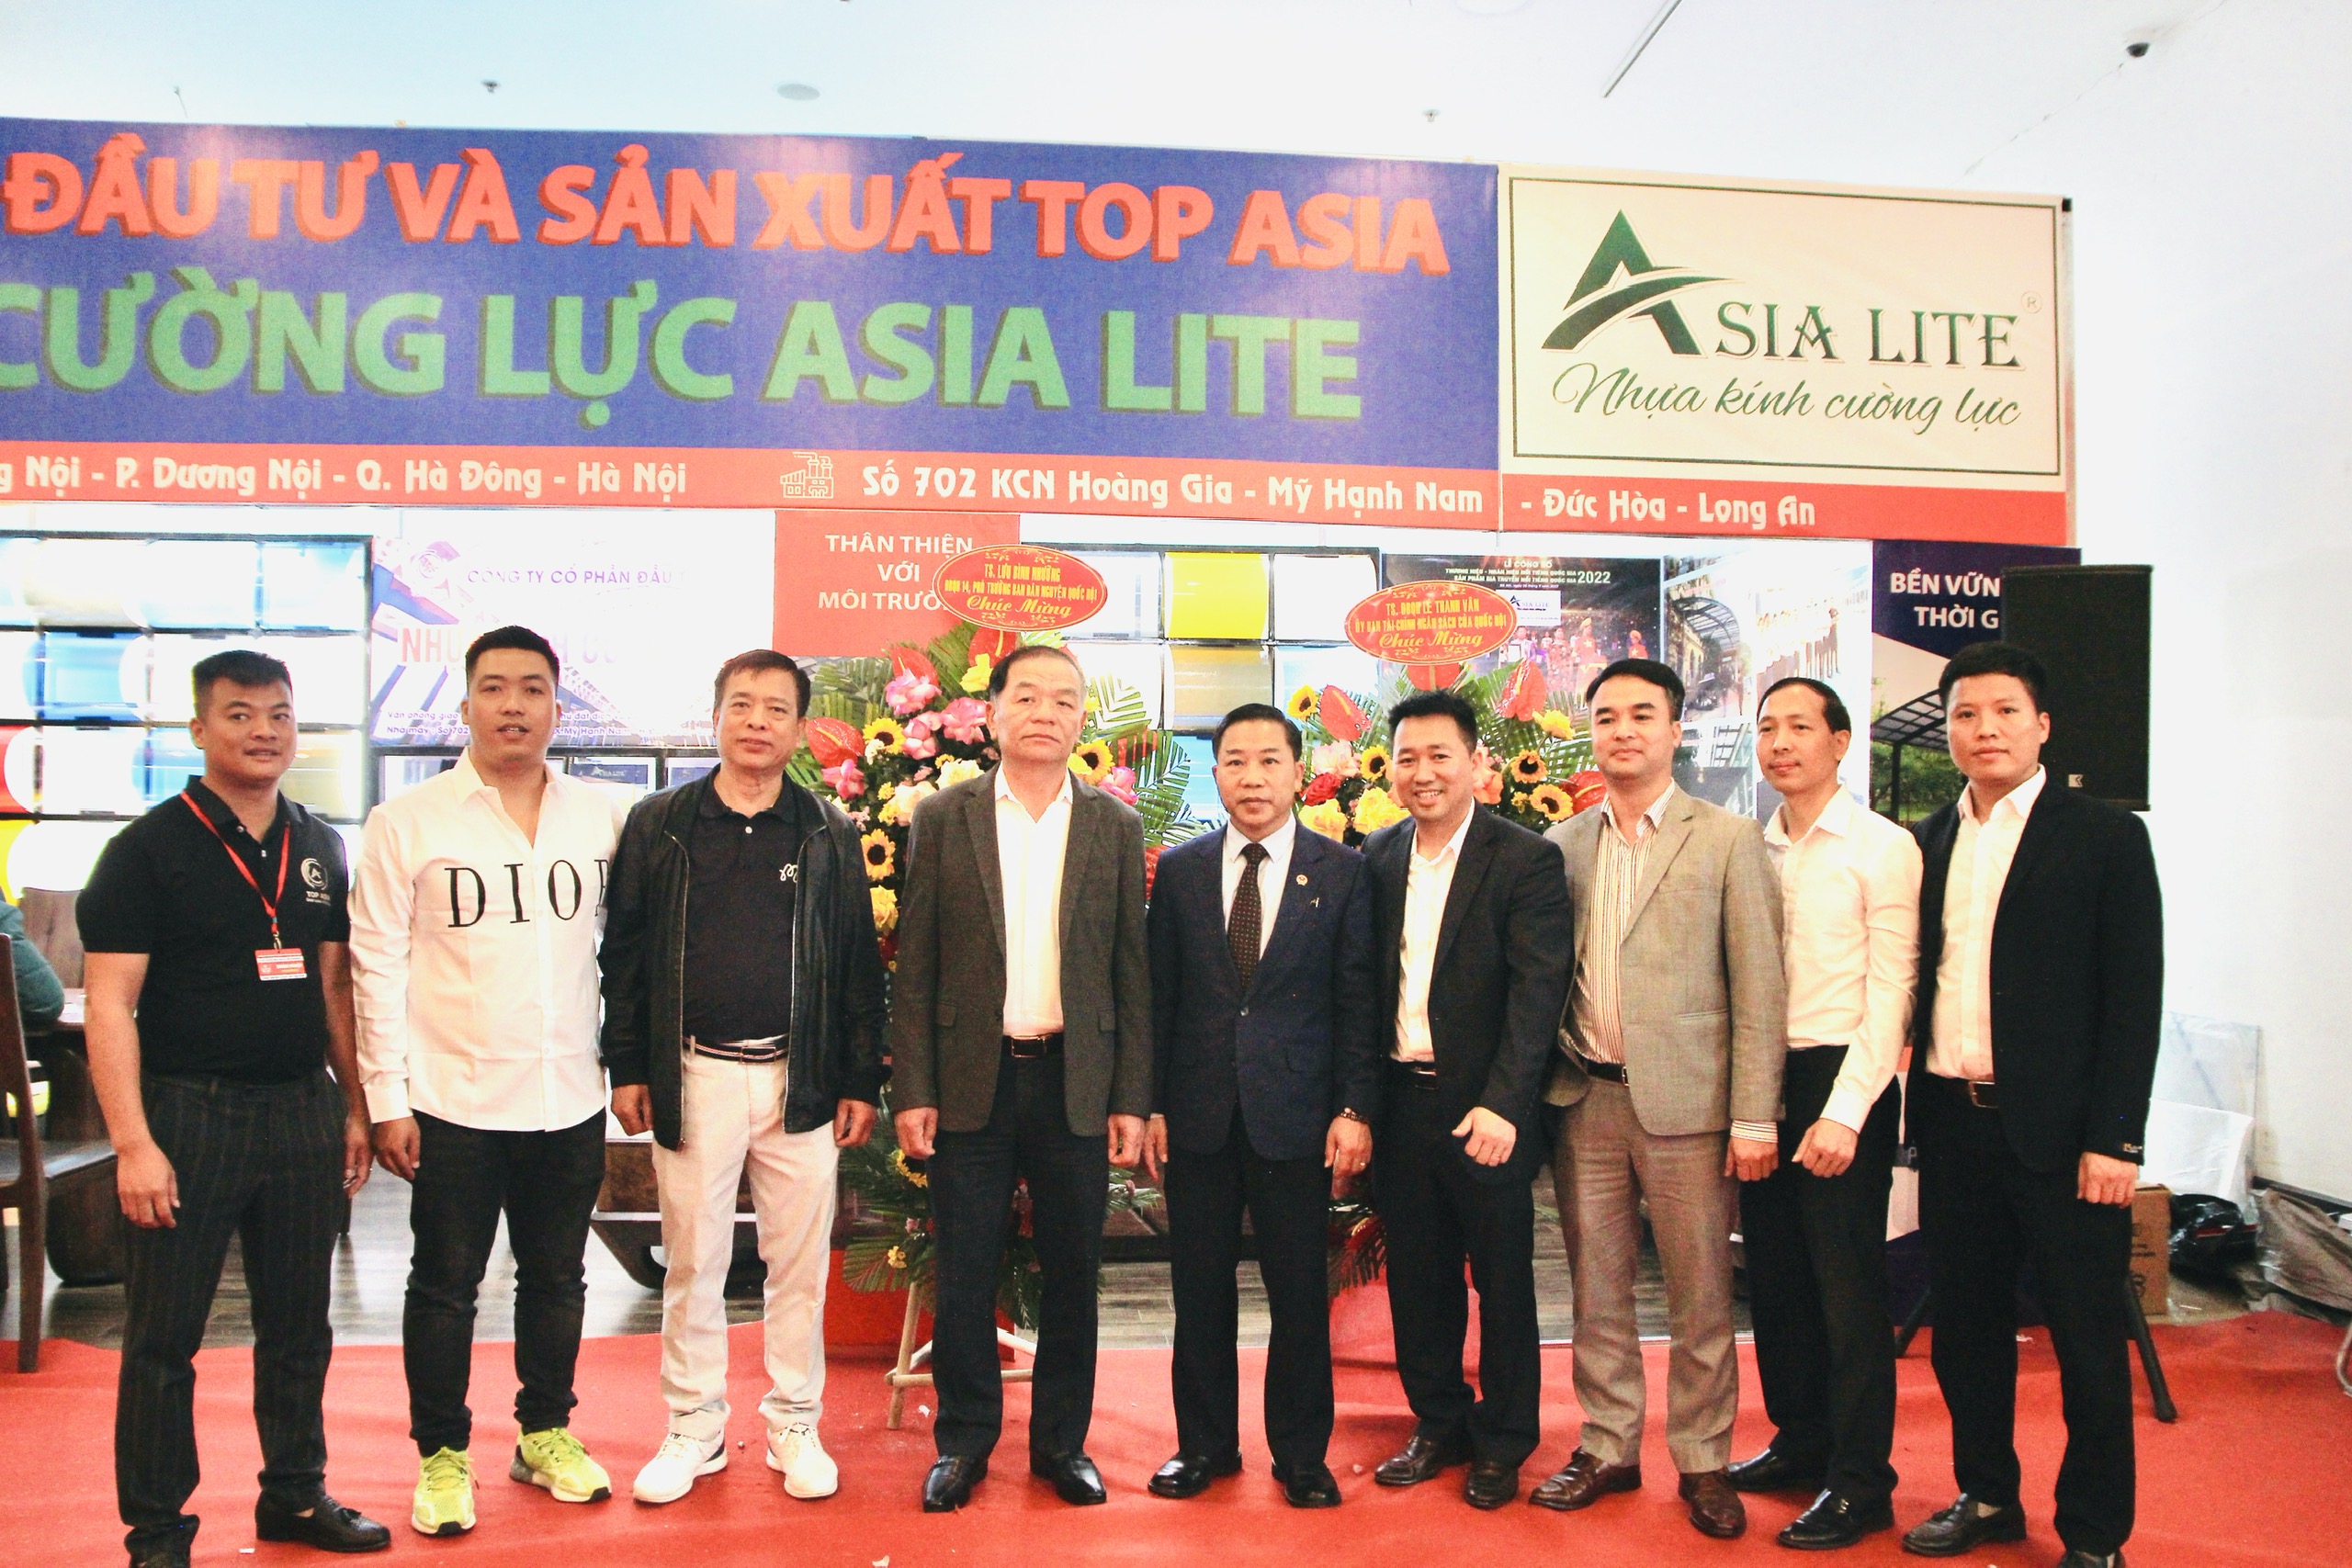 Bác Lê Thanh Vân và Bác Lưu Bình Nhưỡng thăm gian hàng nhựa kính cường lực ASIA LITE của TOP ASIA